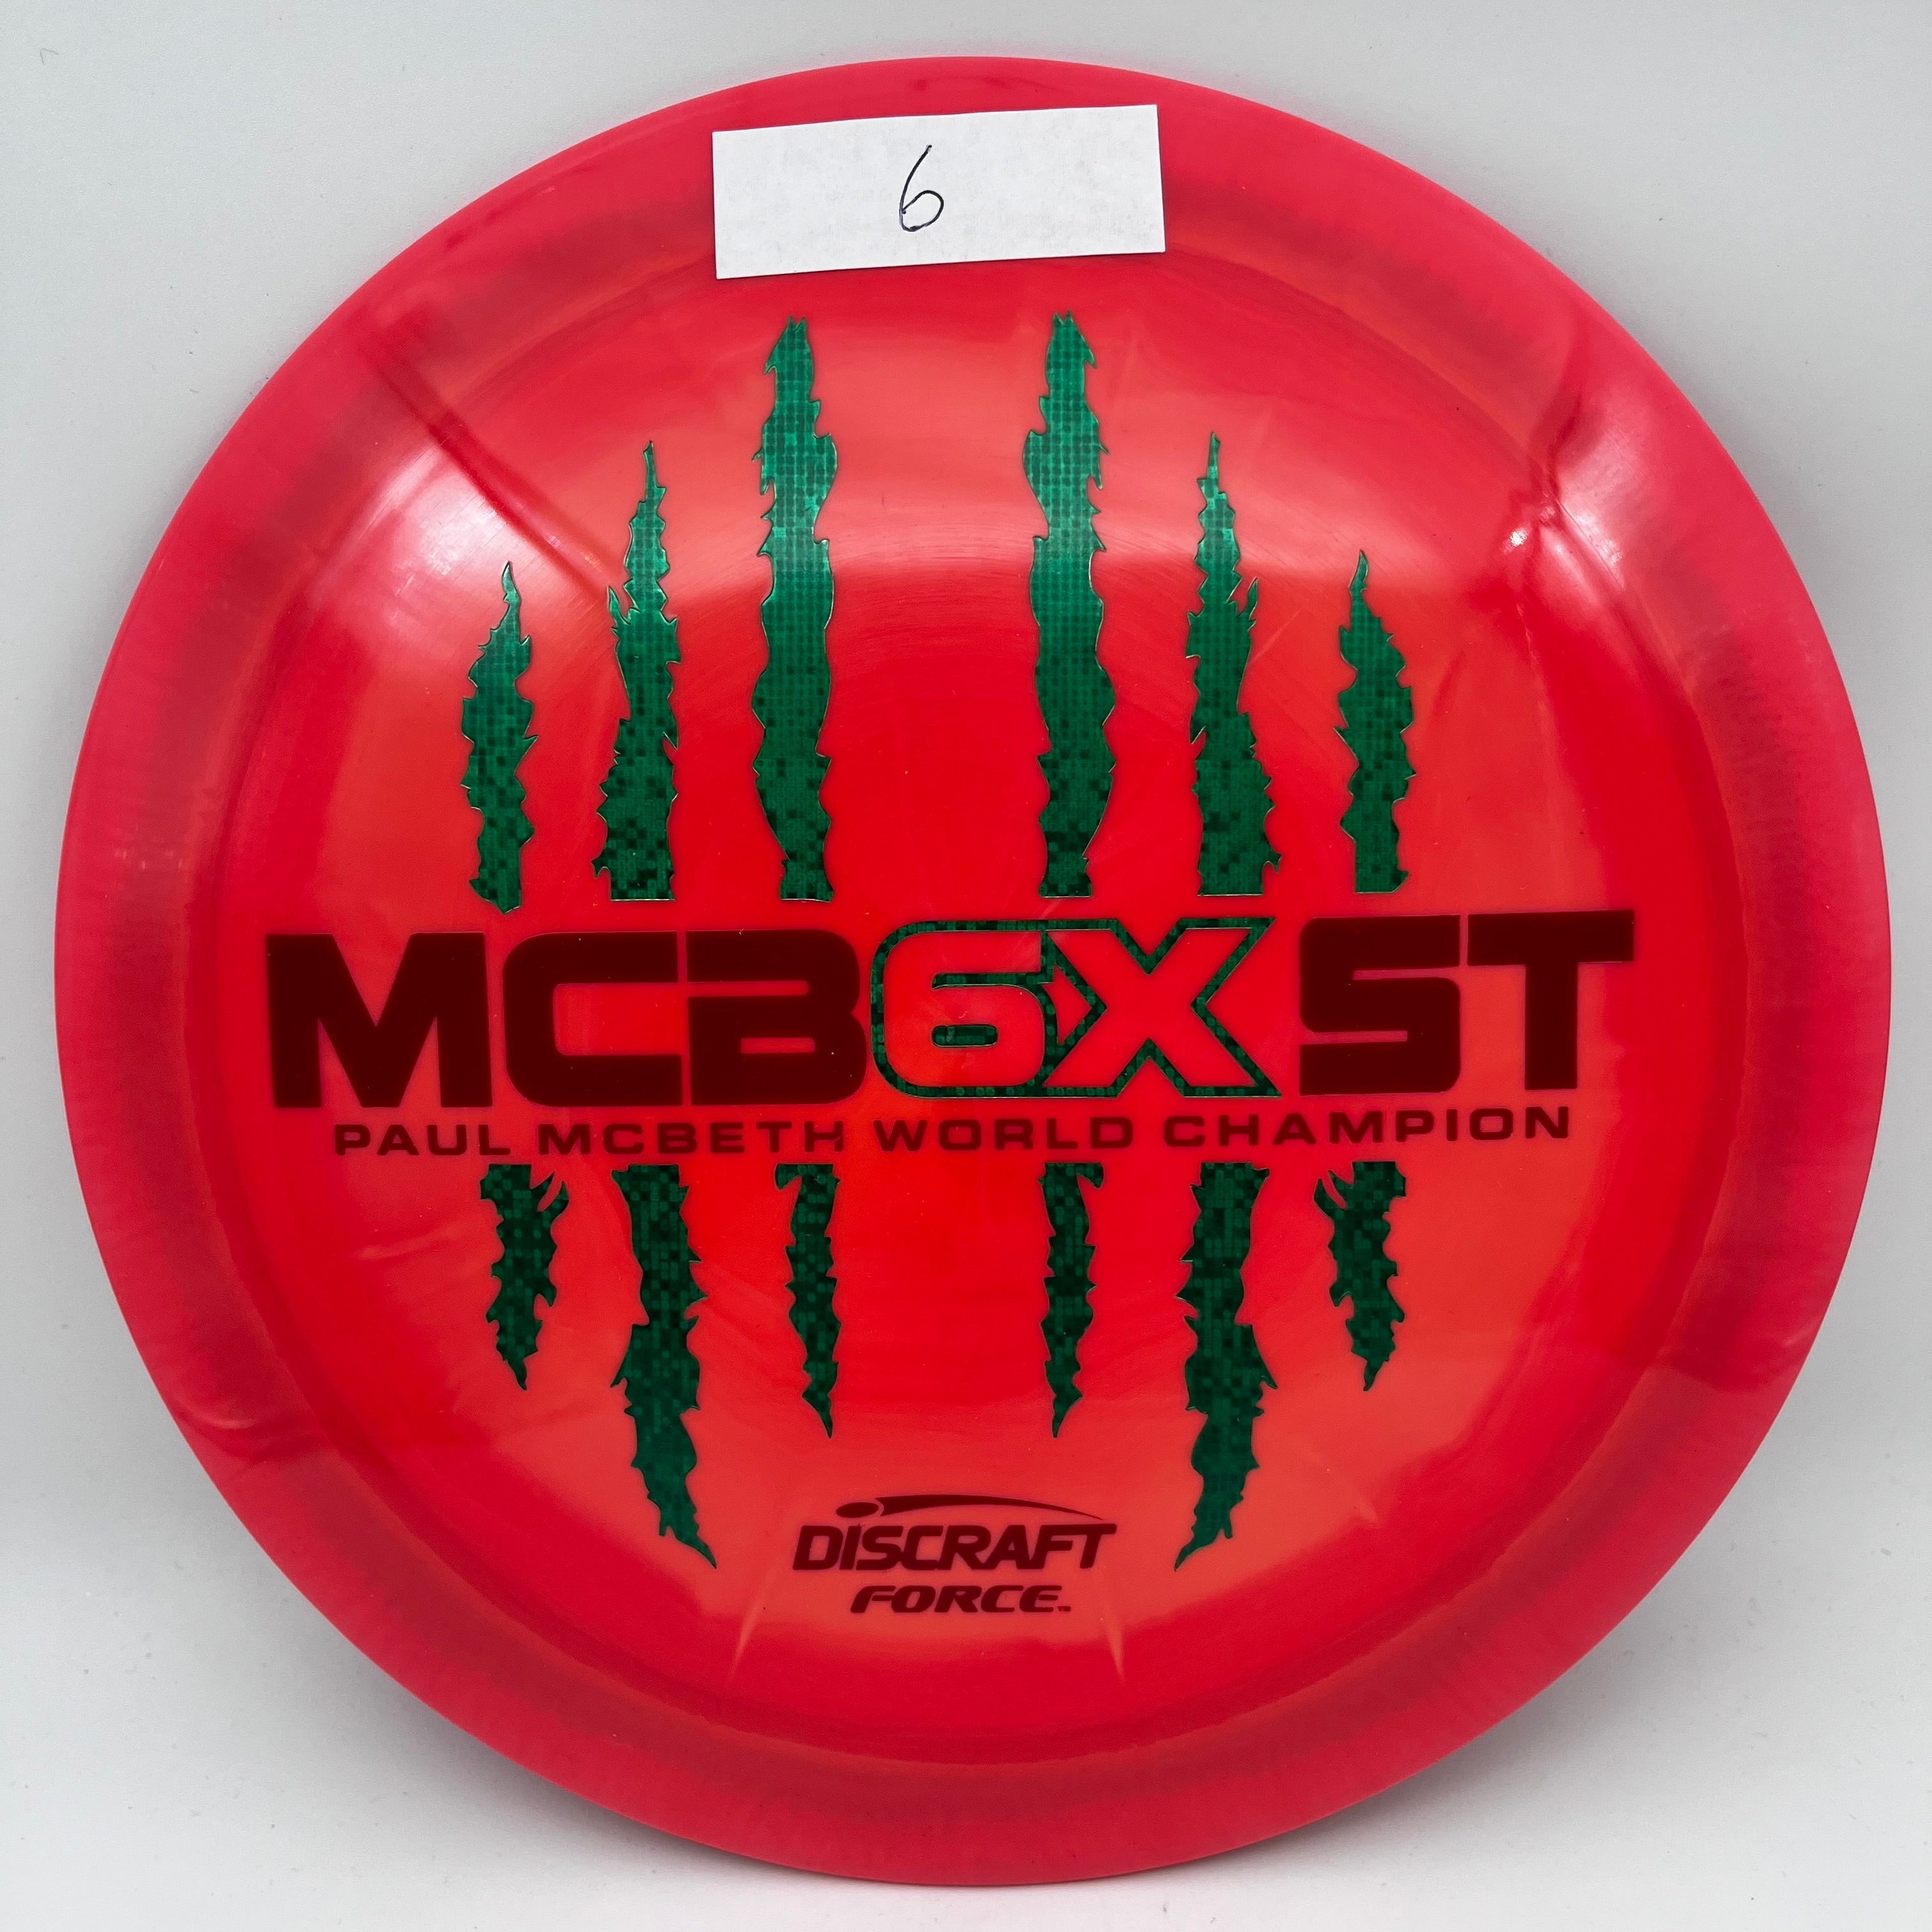 ESP Force Paul McBeth 6X MCBEAST